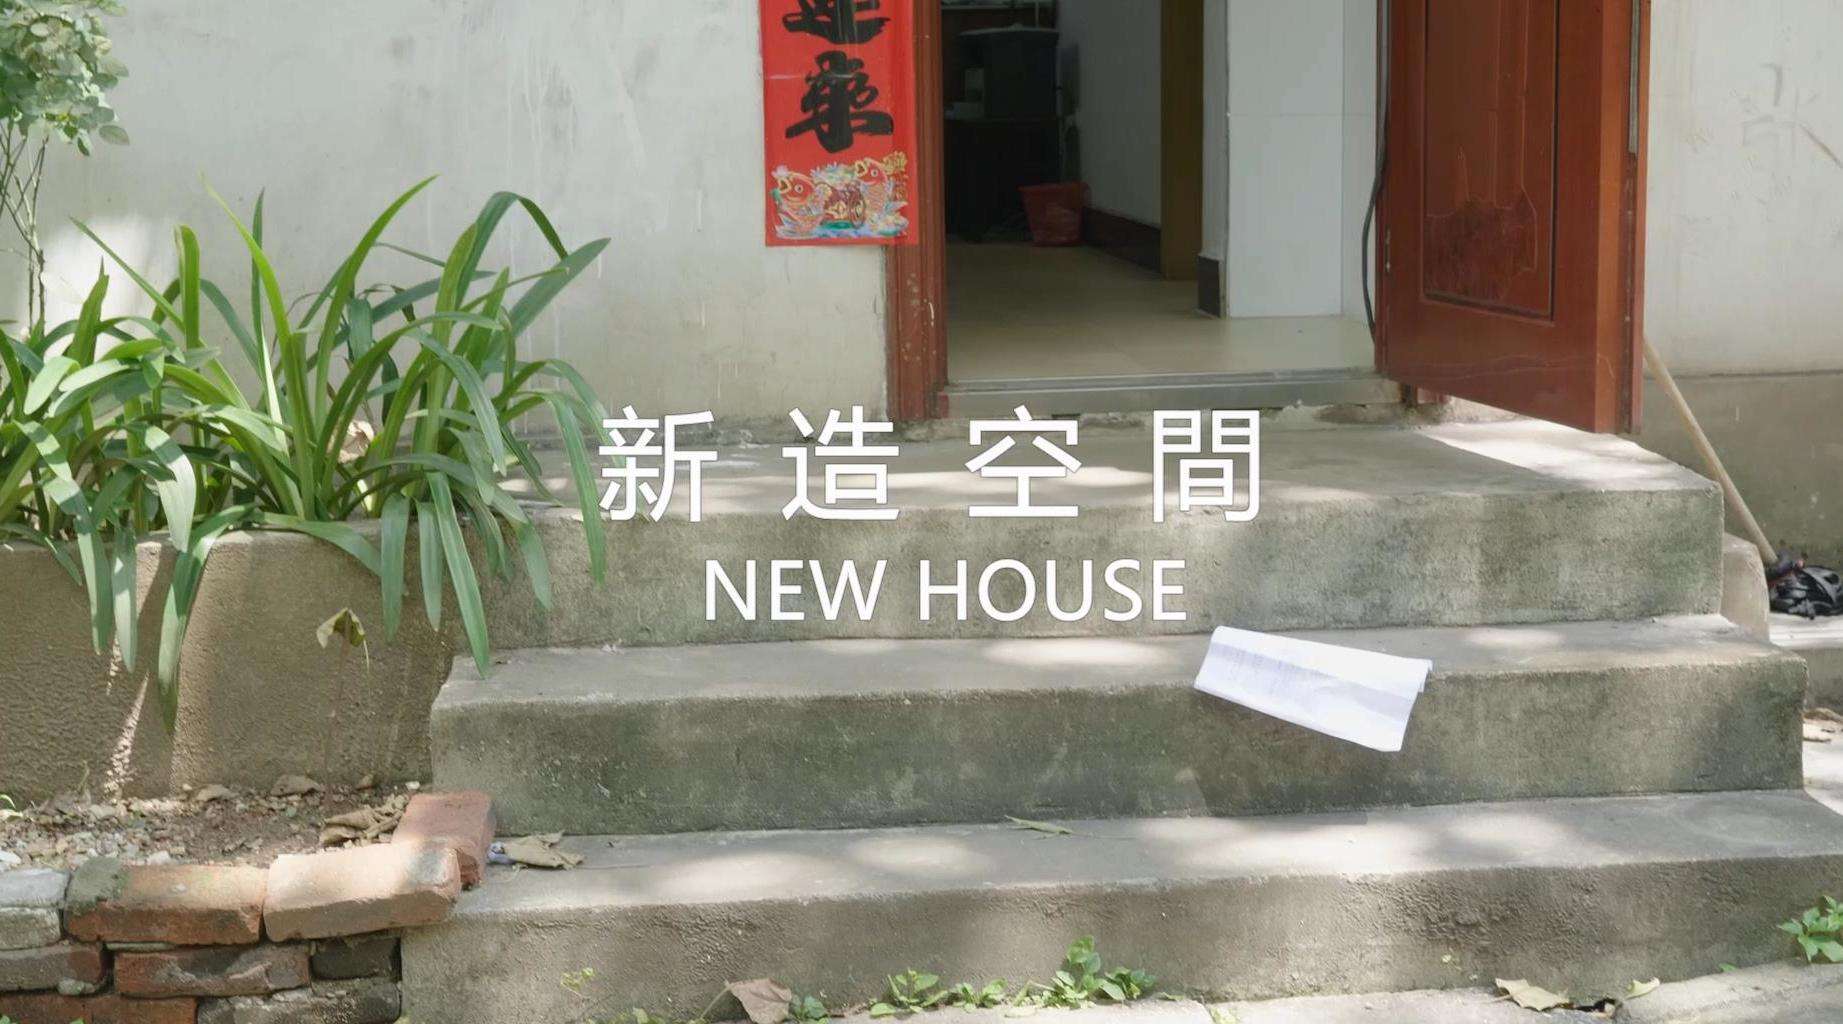 我與憲法主題短片《NEW HOUSE》